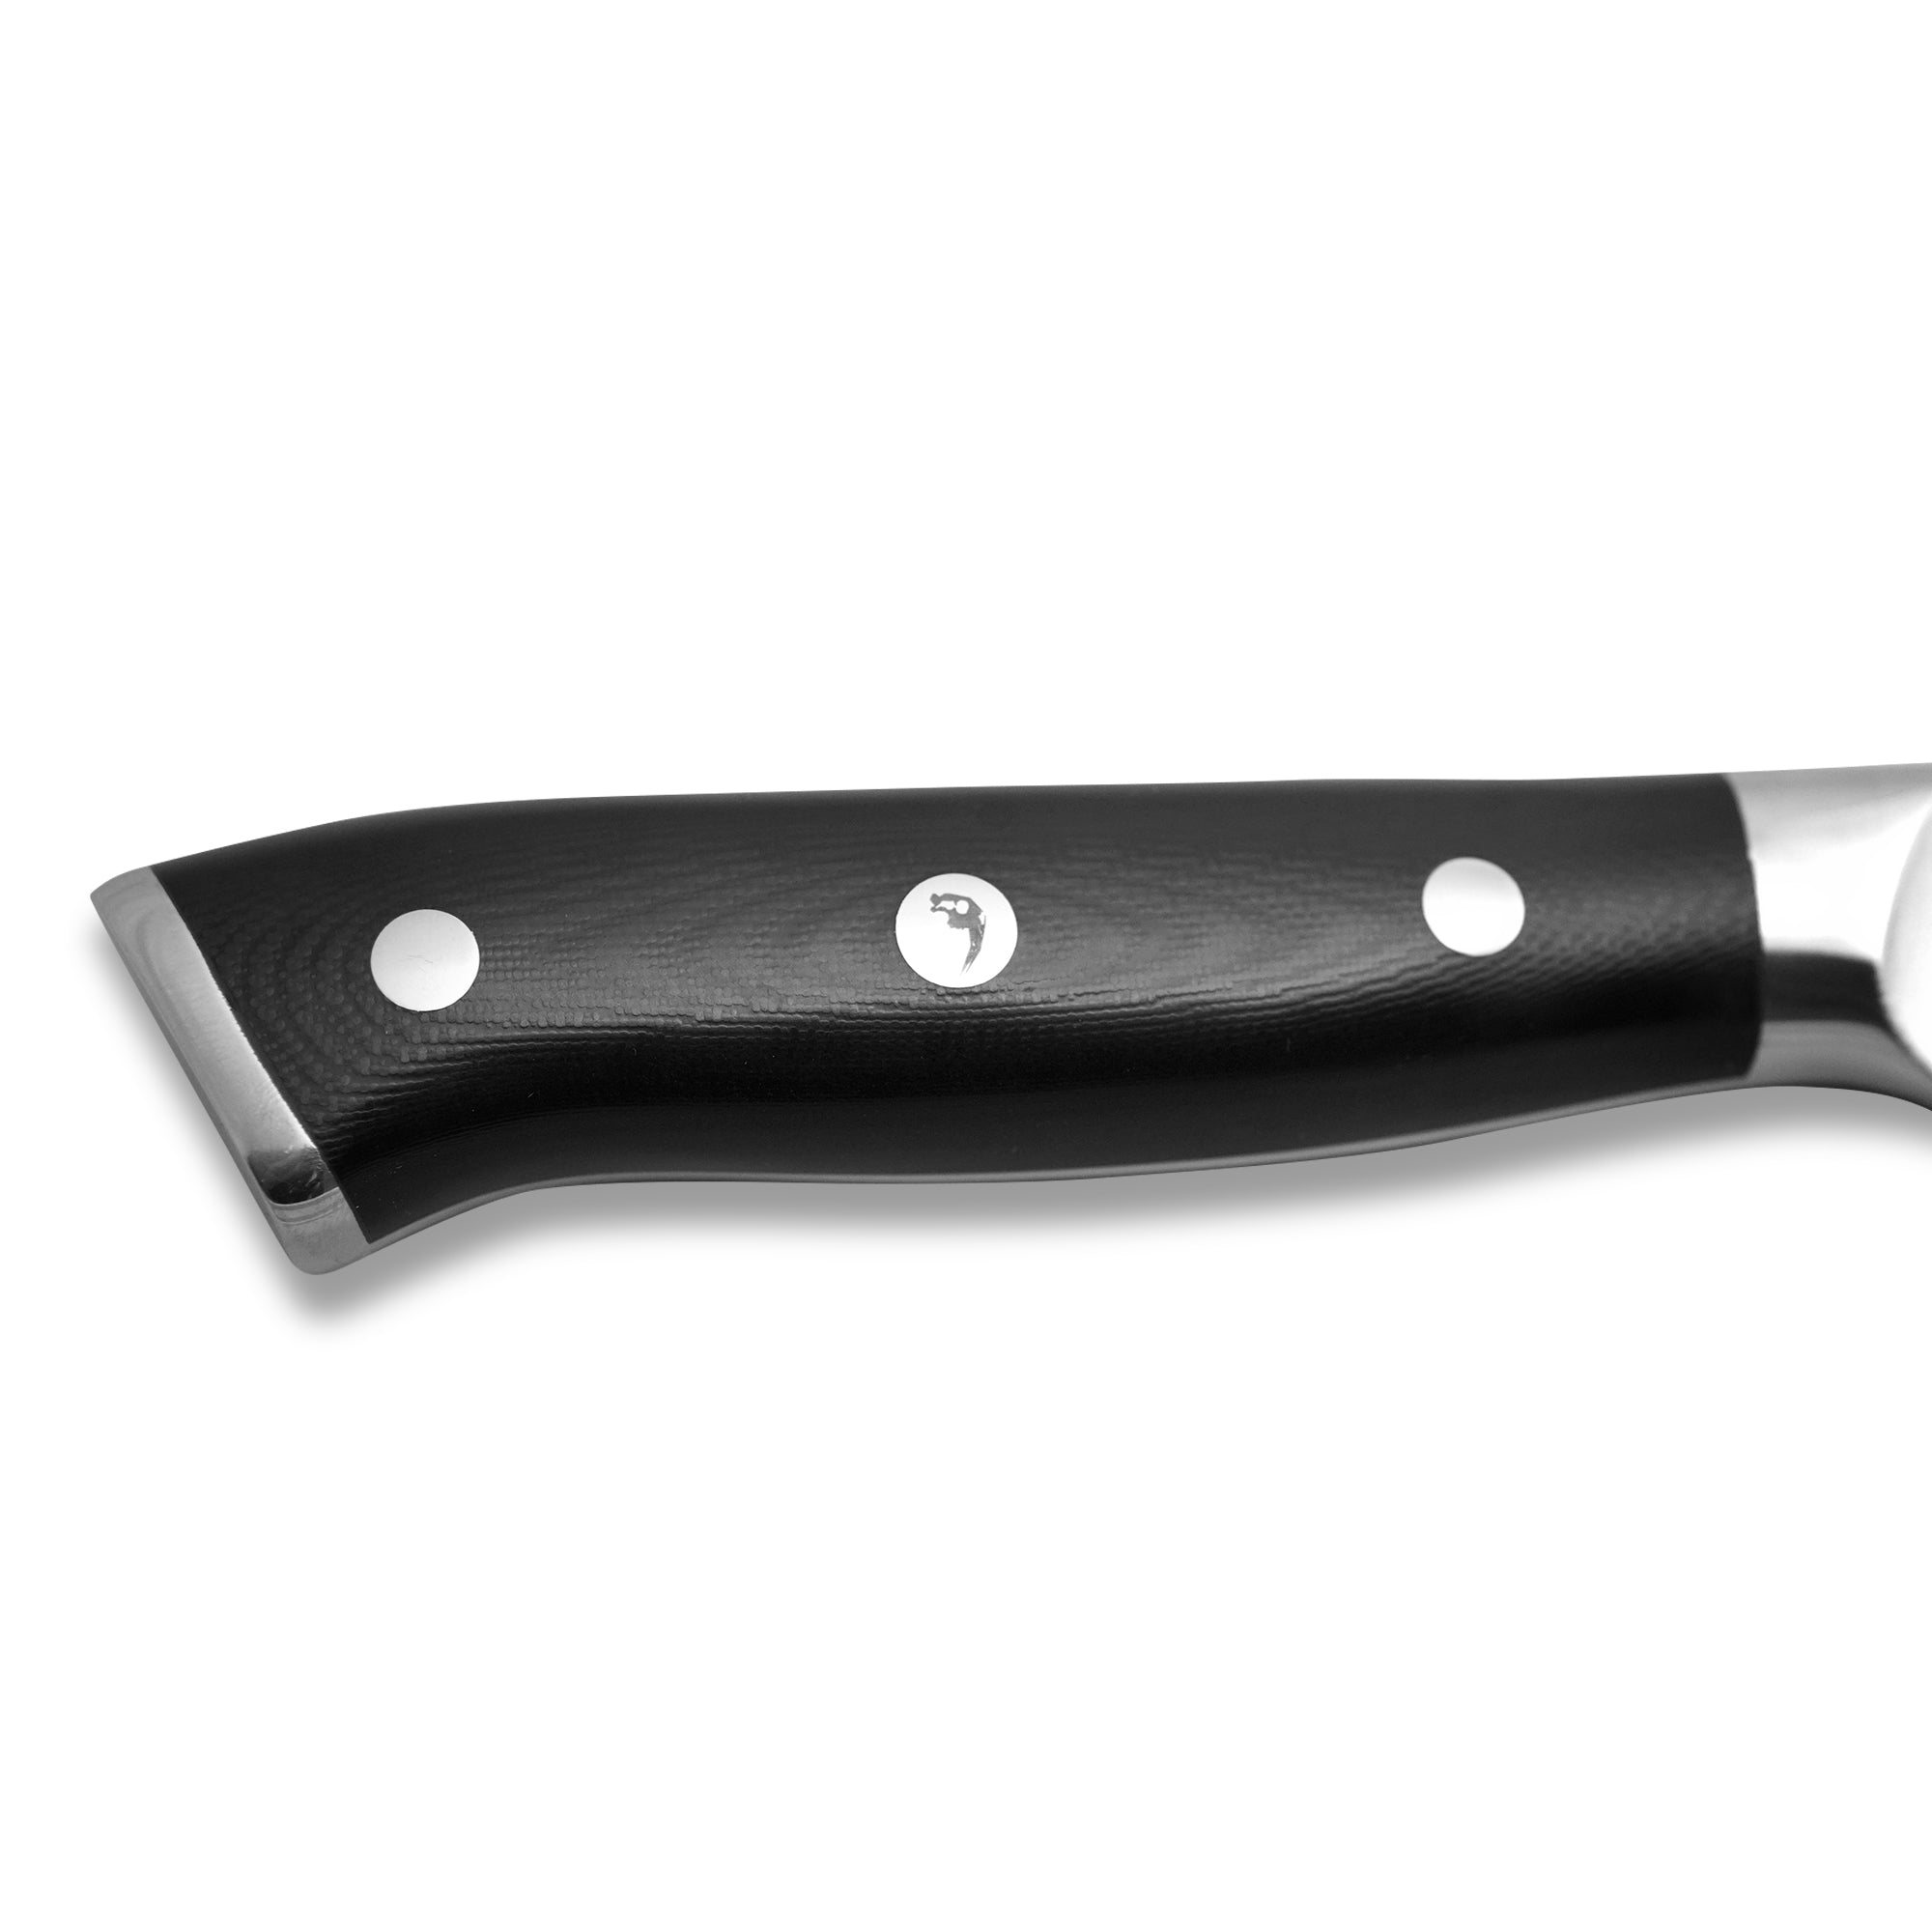 https://www.chefsac.com/cdn/shop/products/der-sabel-x-chef-sac-chef-knife-8-inches-897878_2048x.jpg?v=1648314526